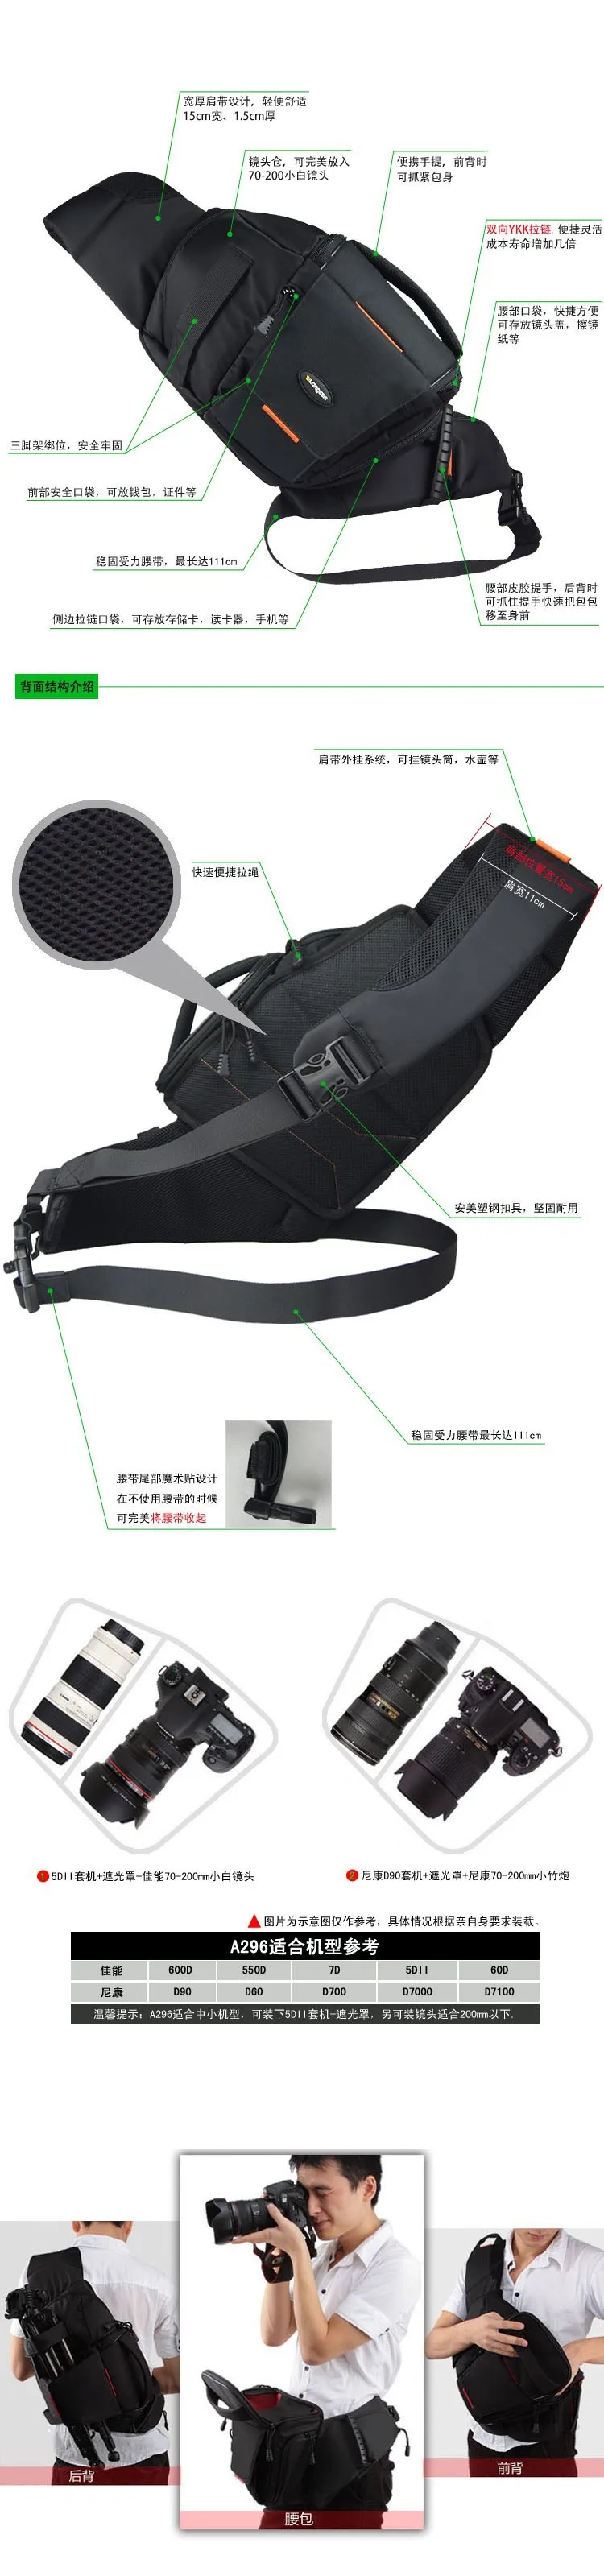 Профессиональный DSLR камера сумка через плечо фото рюкзак цифровой slr поясная сумка рюкзак для canon Nikon+ дождевик